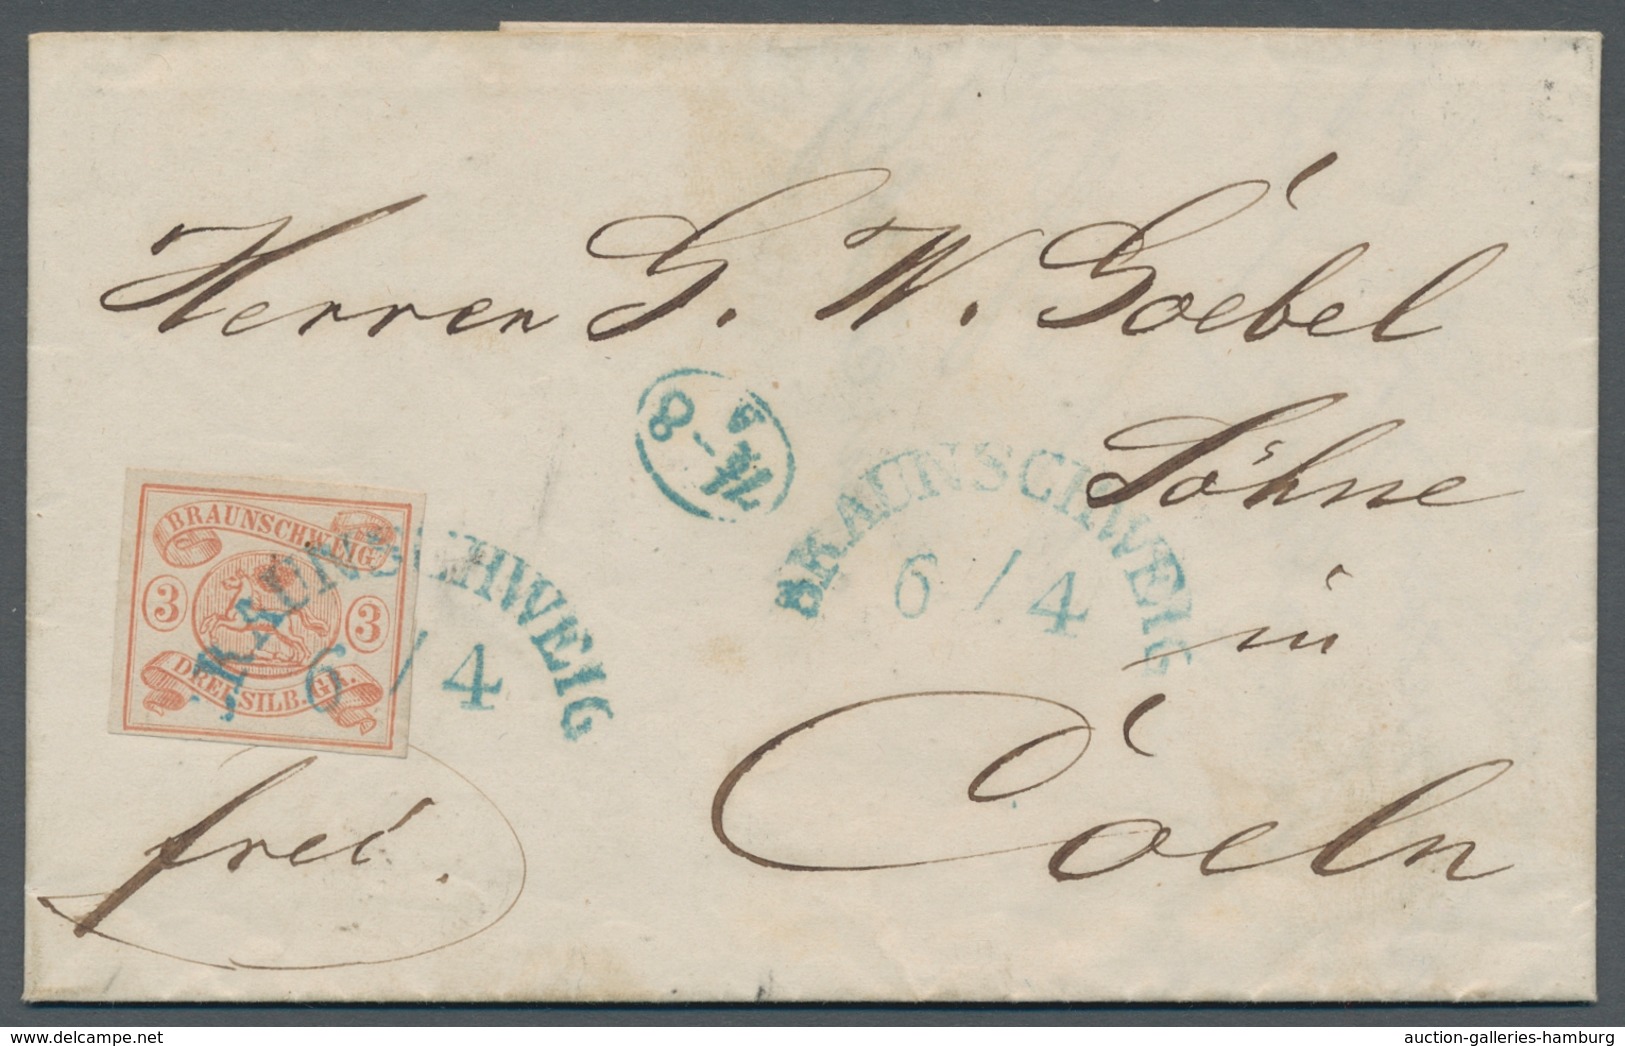 Braunschweig - Marken und Briefe: 1852/1865; ausserordentlich reichhaltige Sammlung der Markenausgab